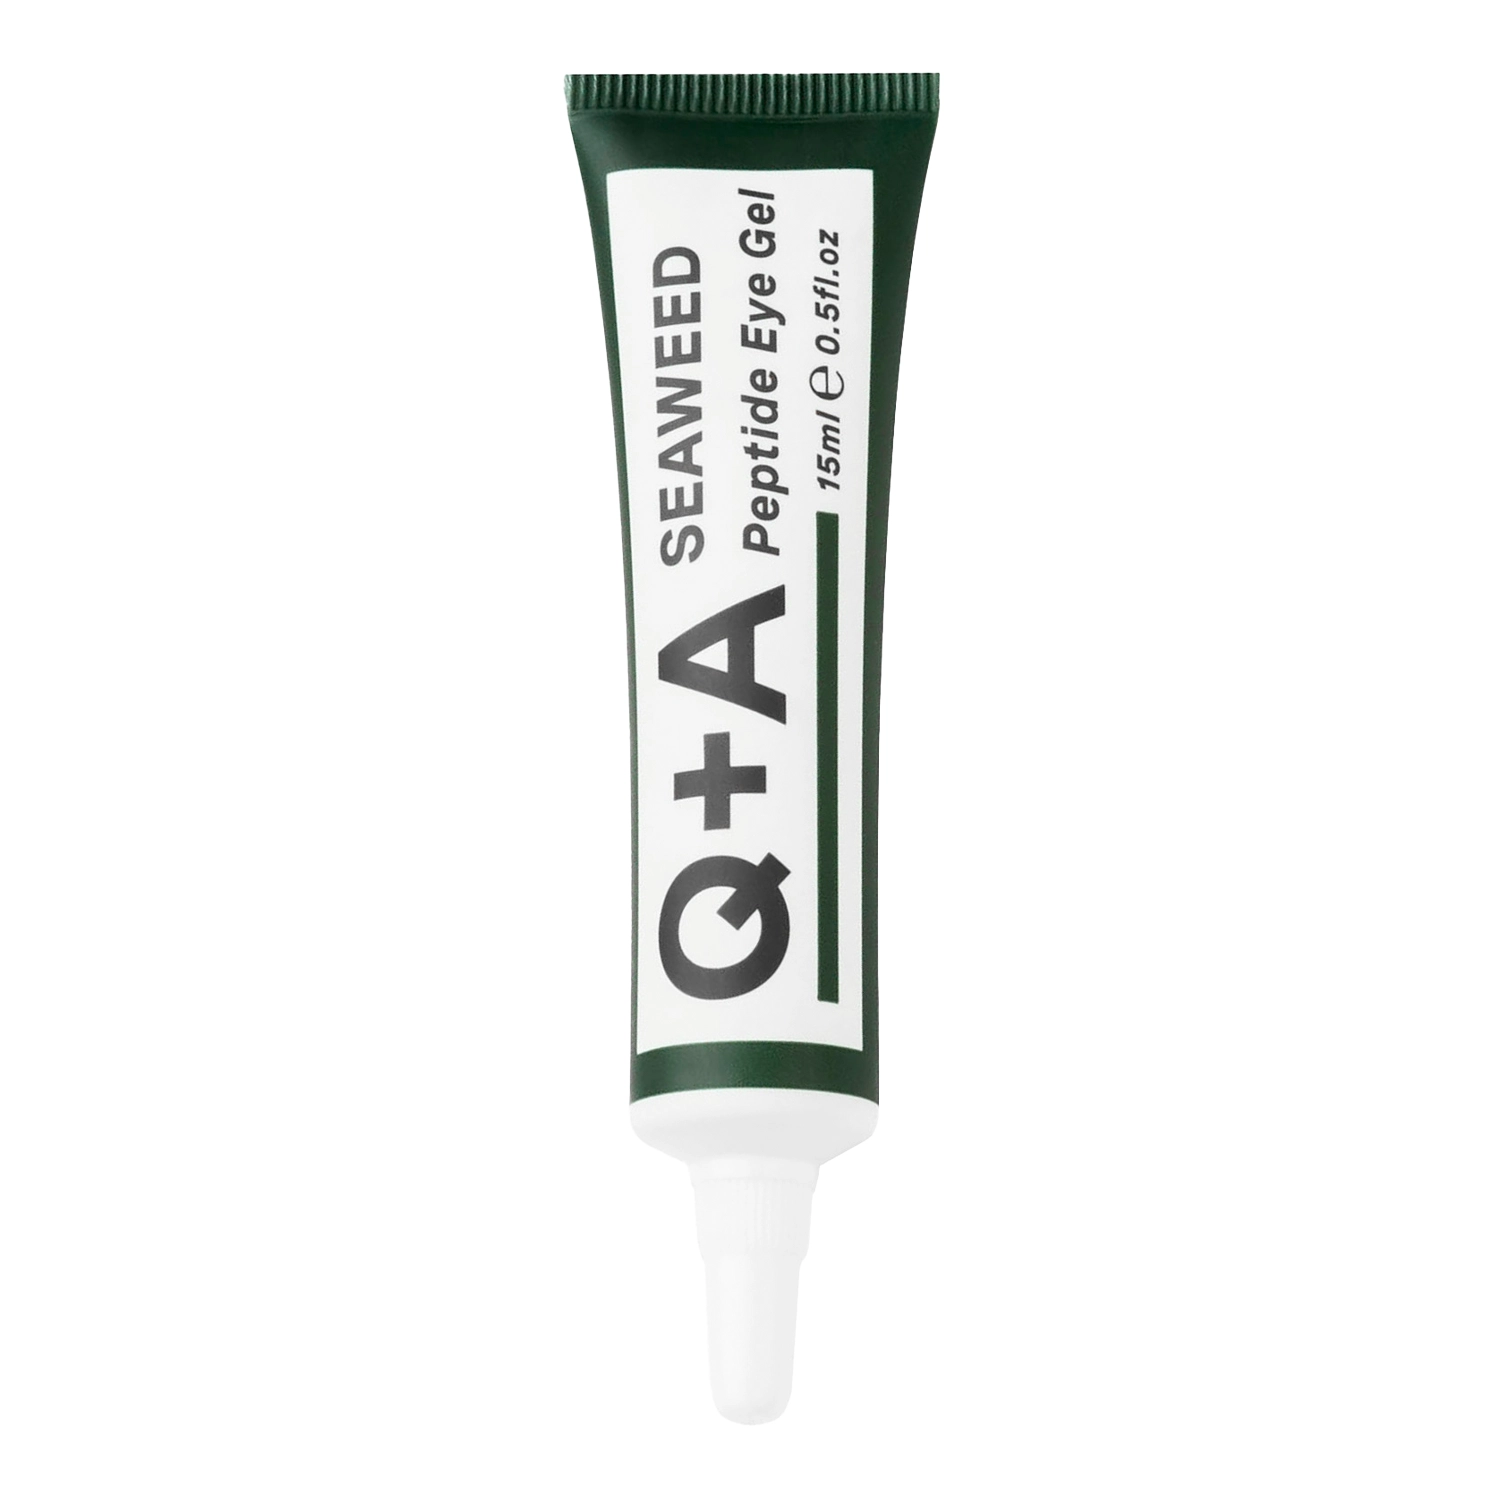 Q+A - Seaweed - Peptide Eye Gel - Gel de ochi cu peptide din alge marine - 15ml